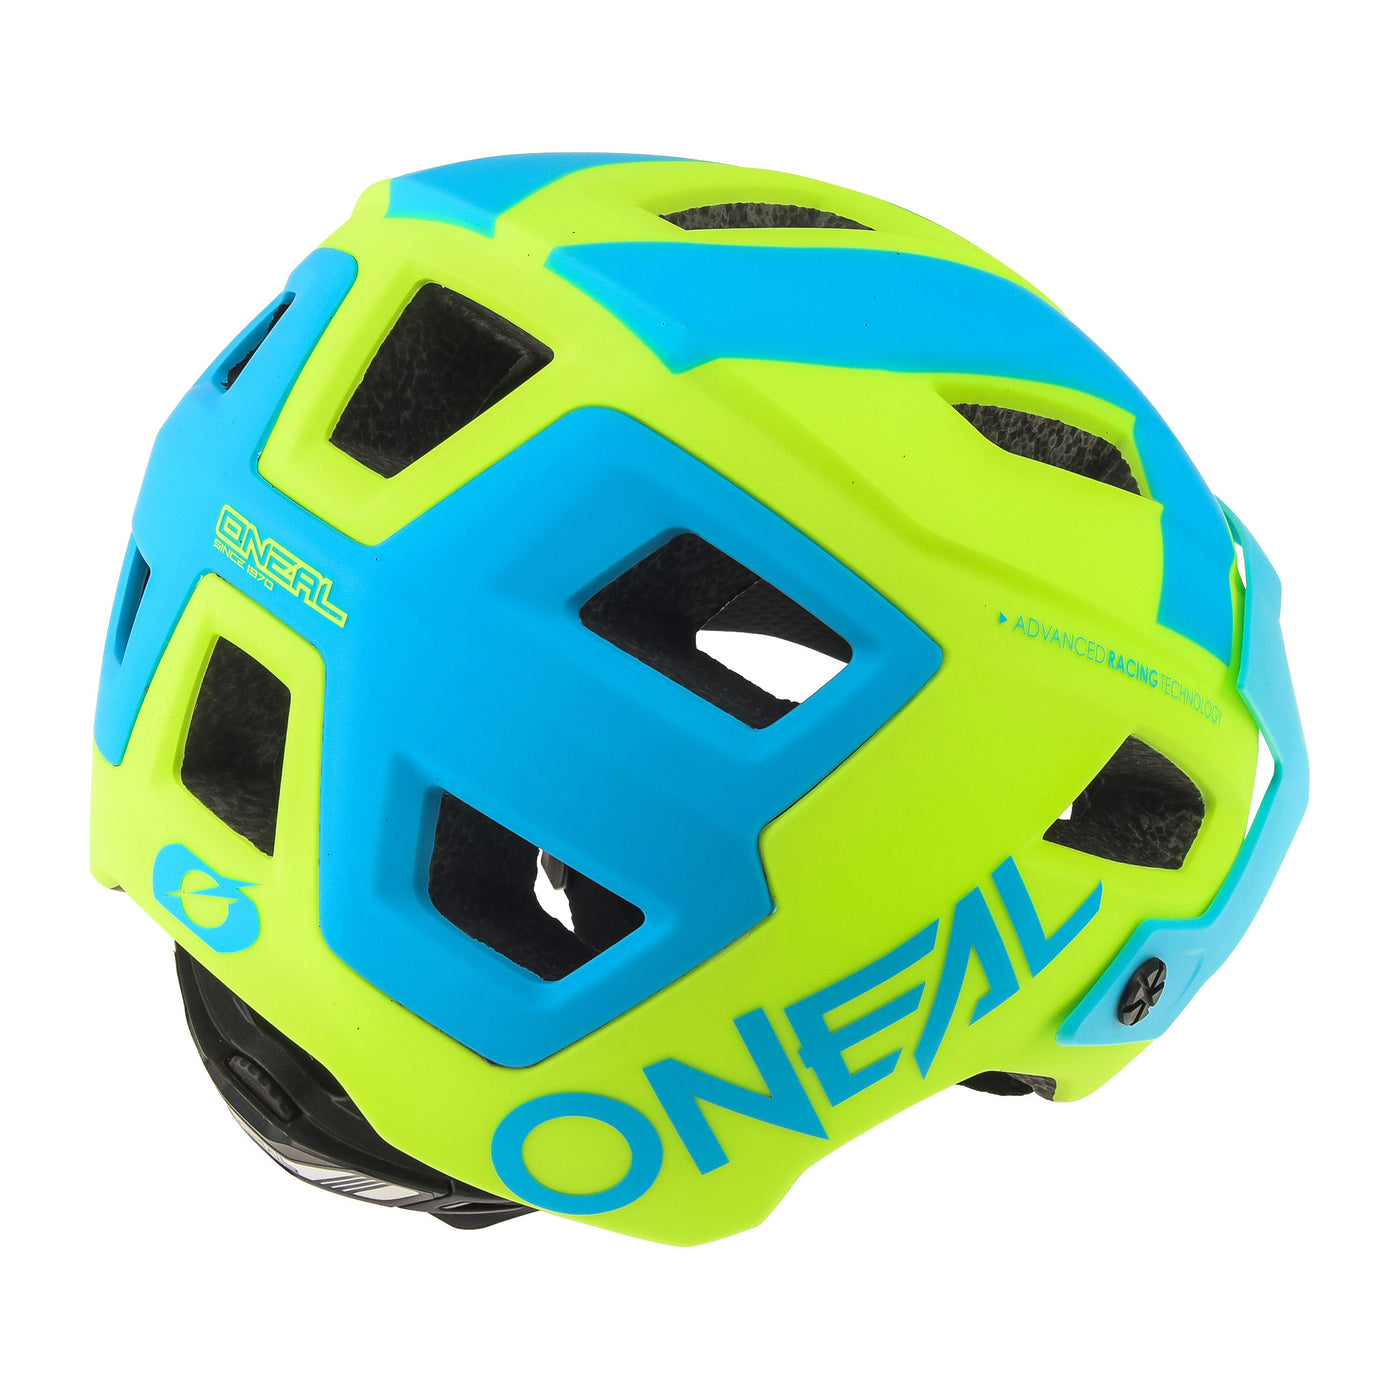 ONEAL DEFENDER 2.0 Helmet SLIVER Neon Yellow/Blue